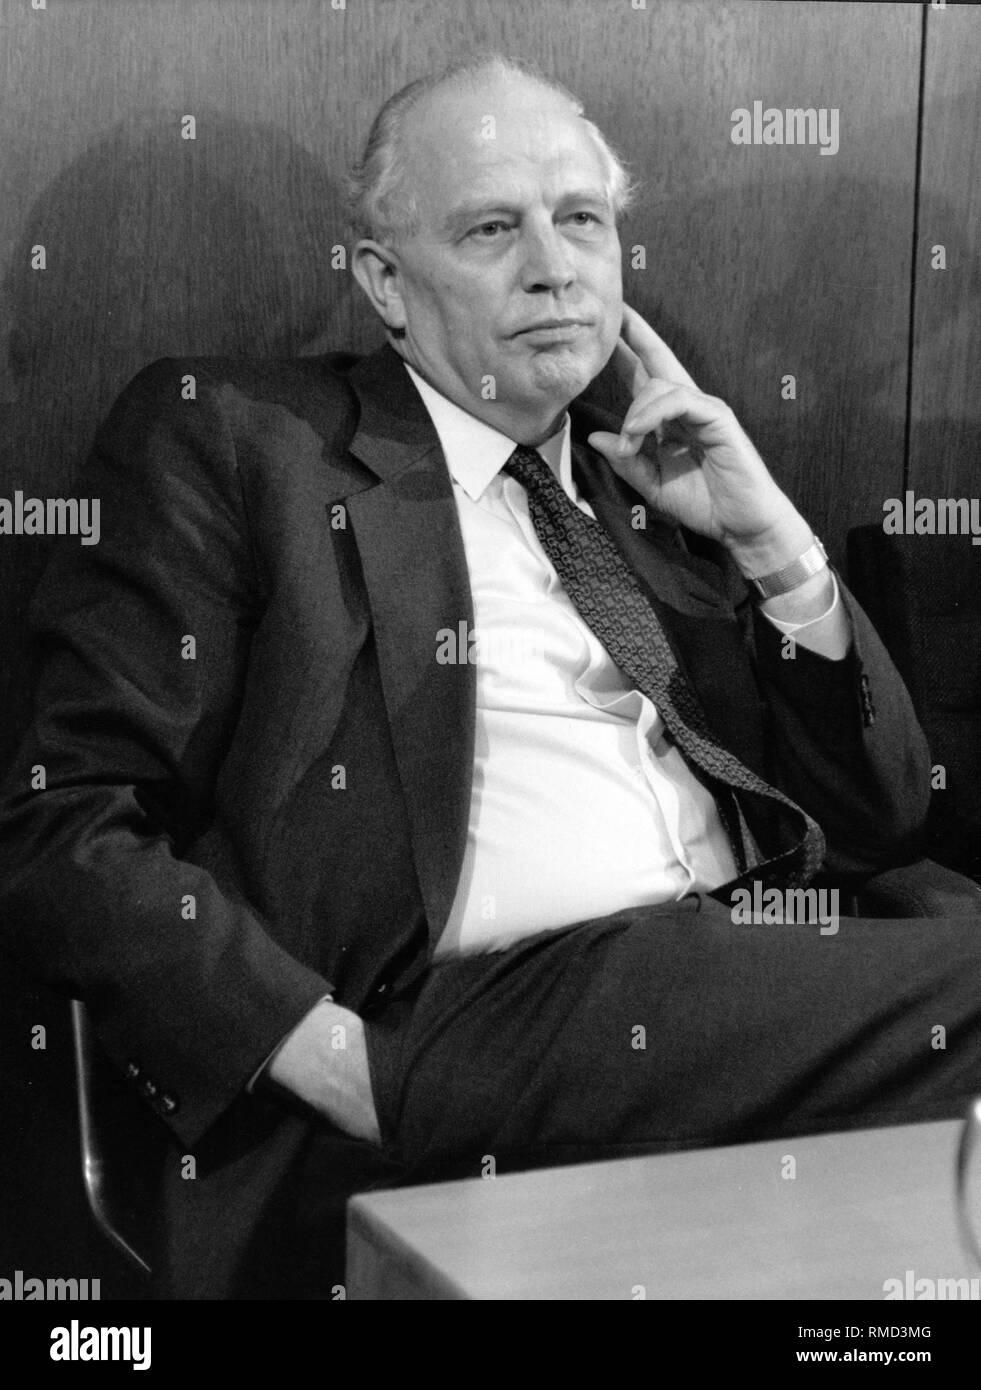 Economista Hans Tietmeyer è stato negoziatore e consigliere del Cancelliere federale in materia economica nel corso dei negoziati per la riunificazione della Germania. Dal 1990 Tietmeyer era un membro del Comitato esecutivo della Deutsche Bundesbank. Foto Stock